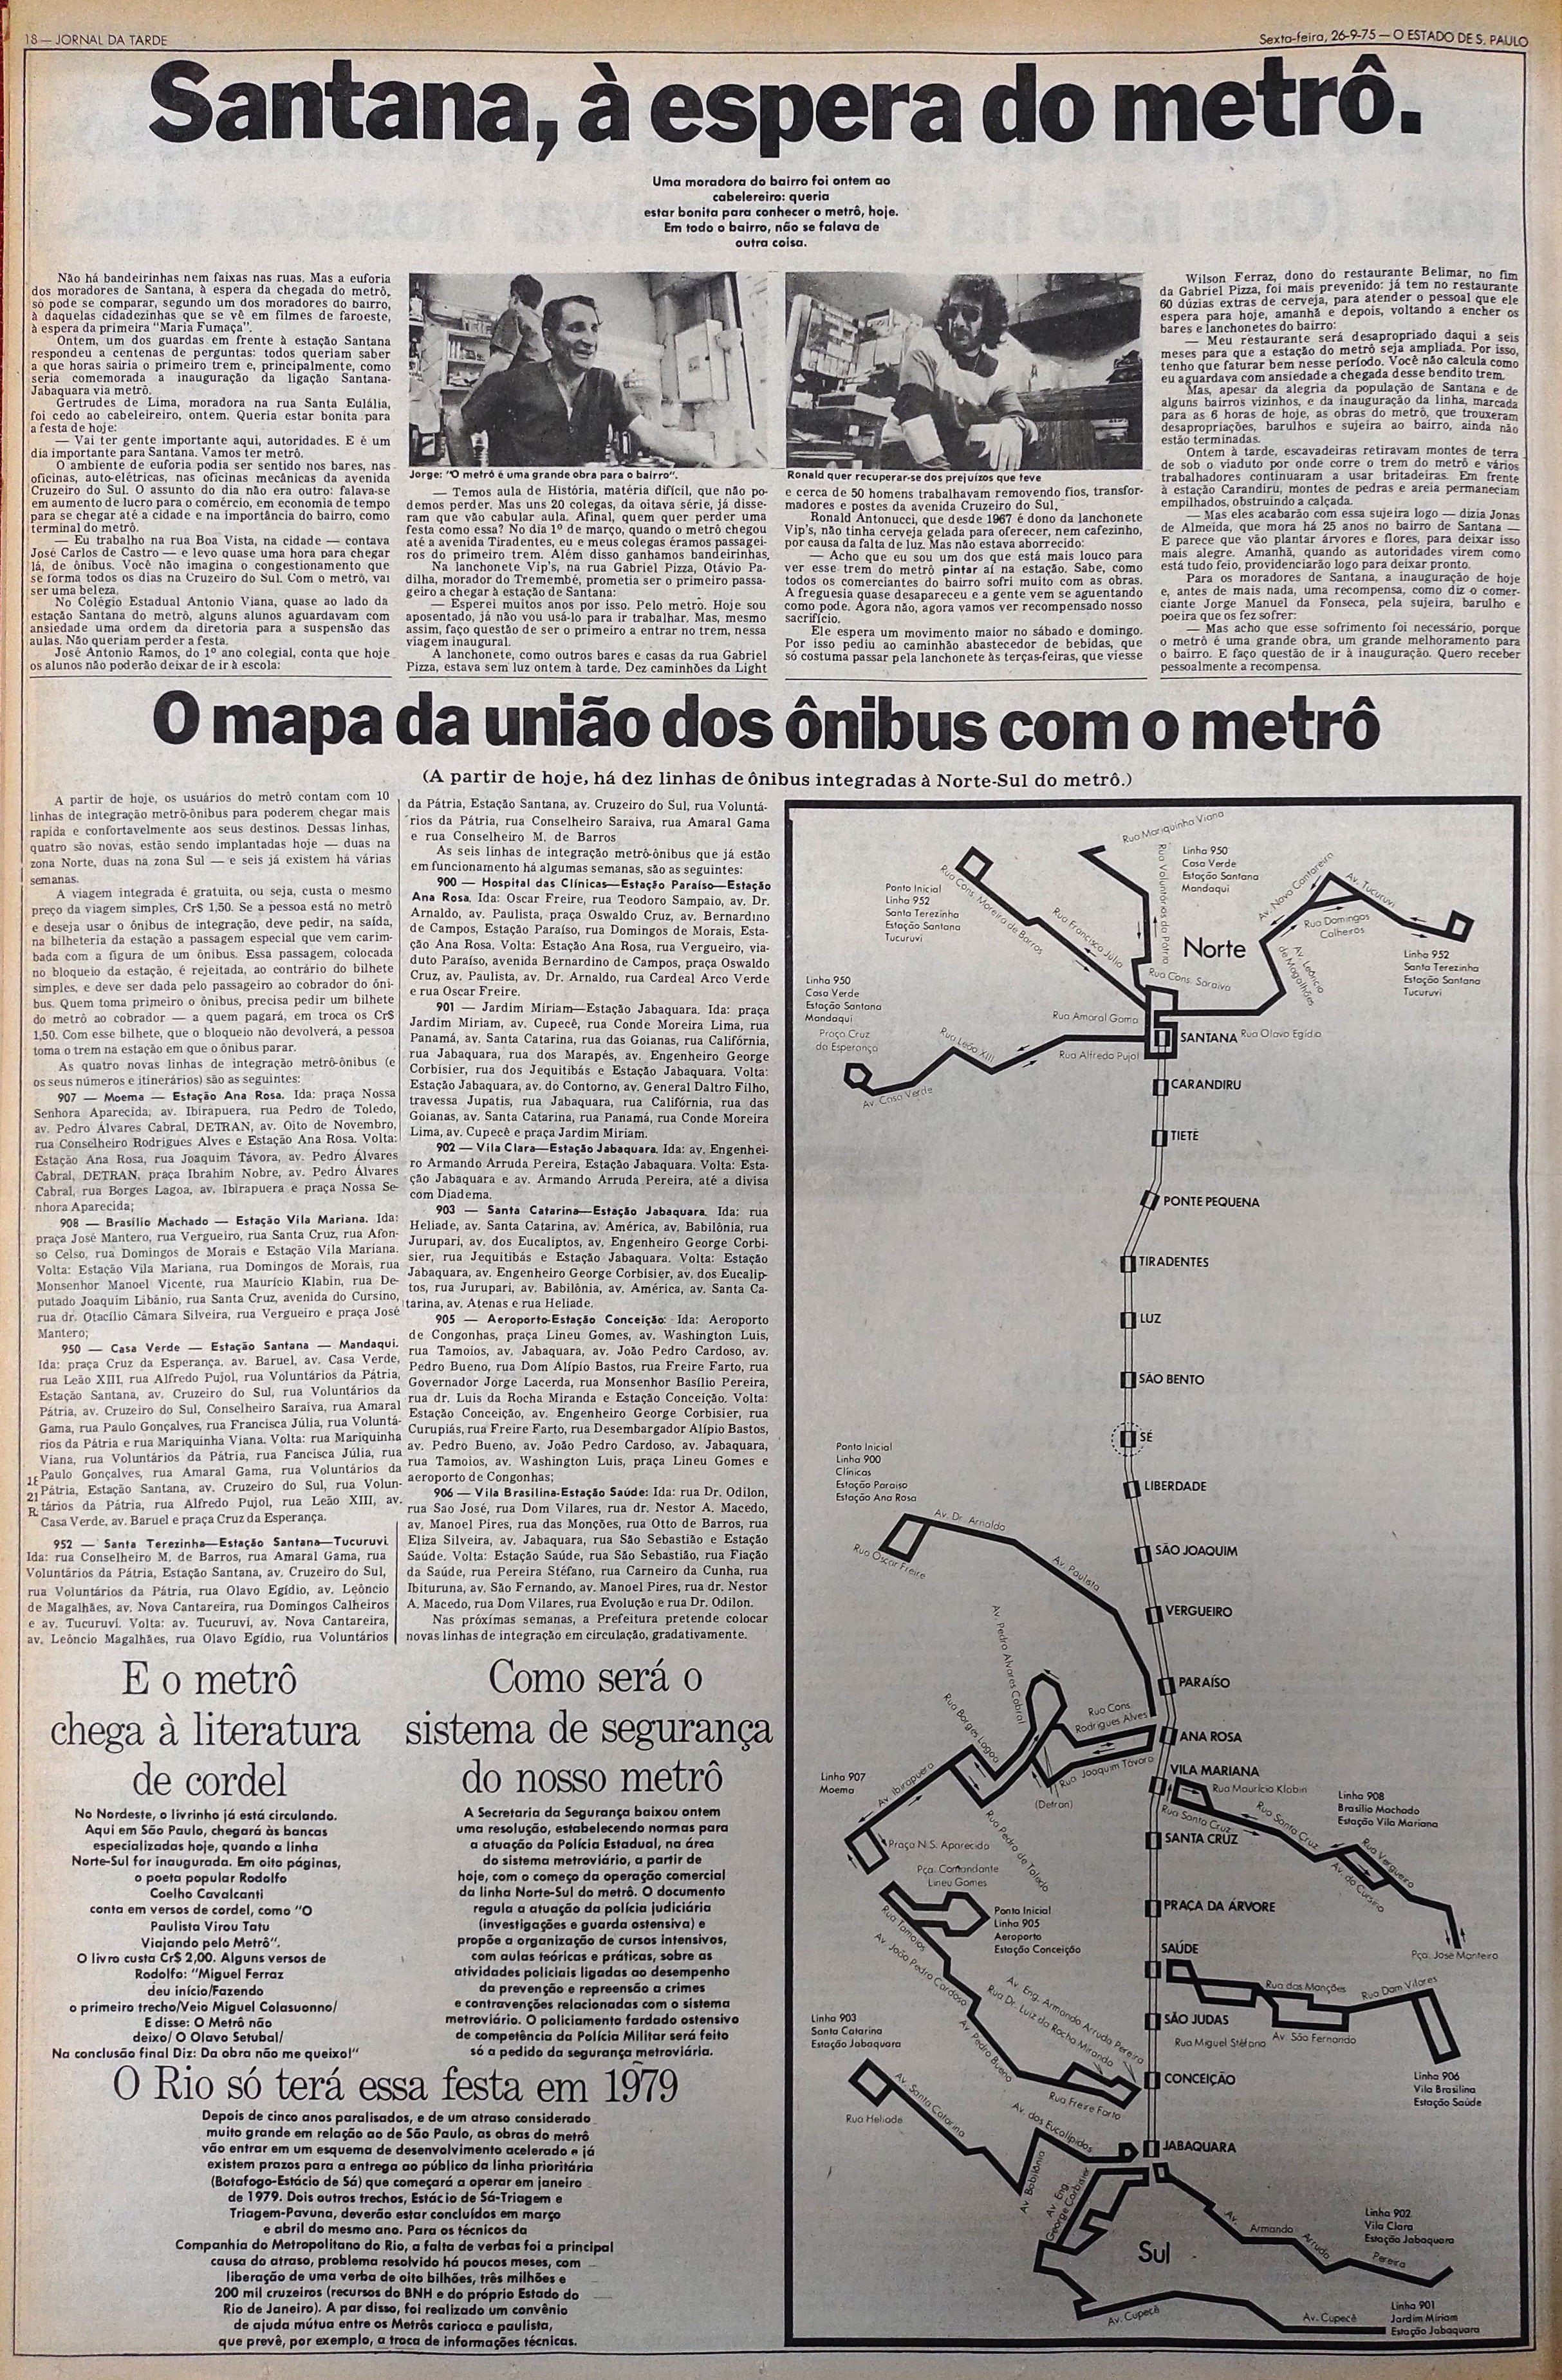 Como chegar até Rua Mendes Júnior em Brás de Ônibus, Metrô ou Trem?